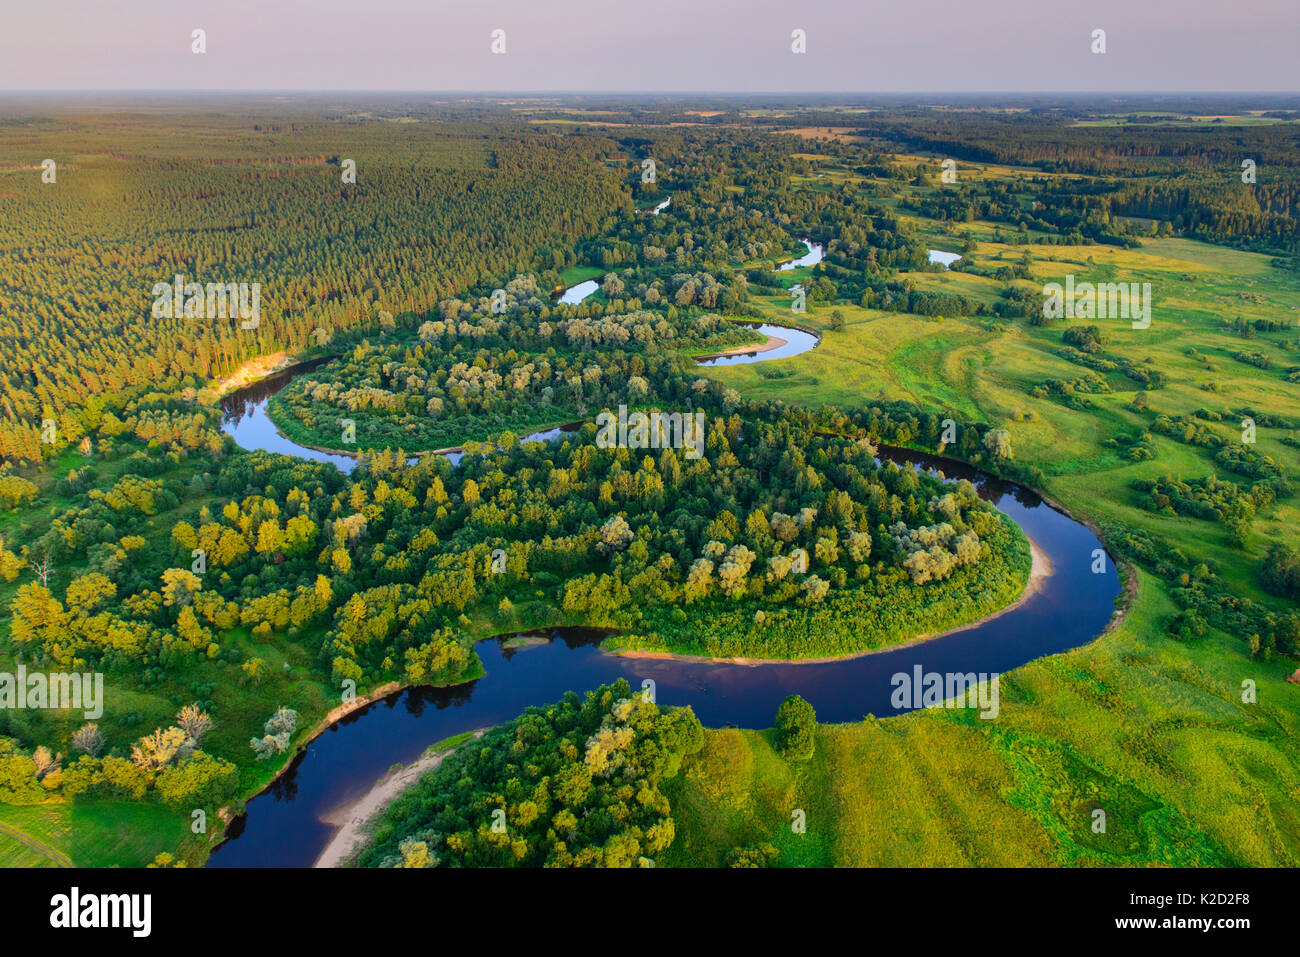 Vista aerea di Rver Koiva, e il confine tra Estonia e Lettonia nel sud dell'Estonia, Valgamaa, Estonia. Agosto 2014. L'Estonia è sul lato sinistro del fiume e la Lettonia sulla riva destra. Foto Stock